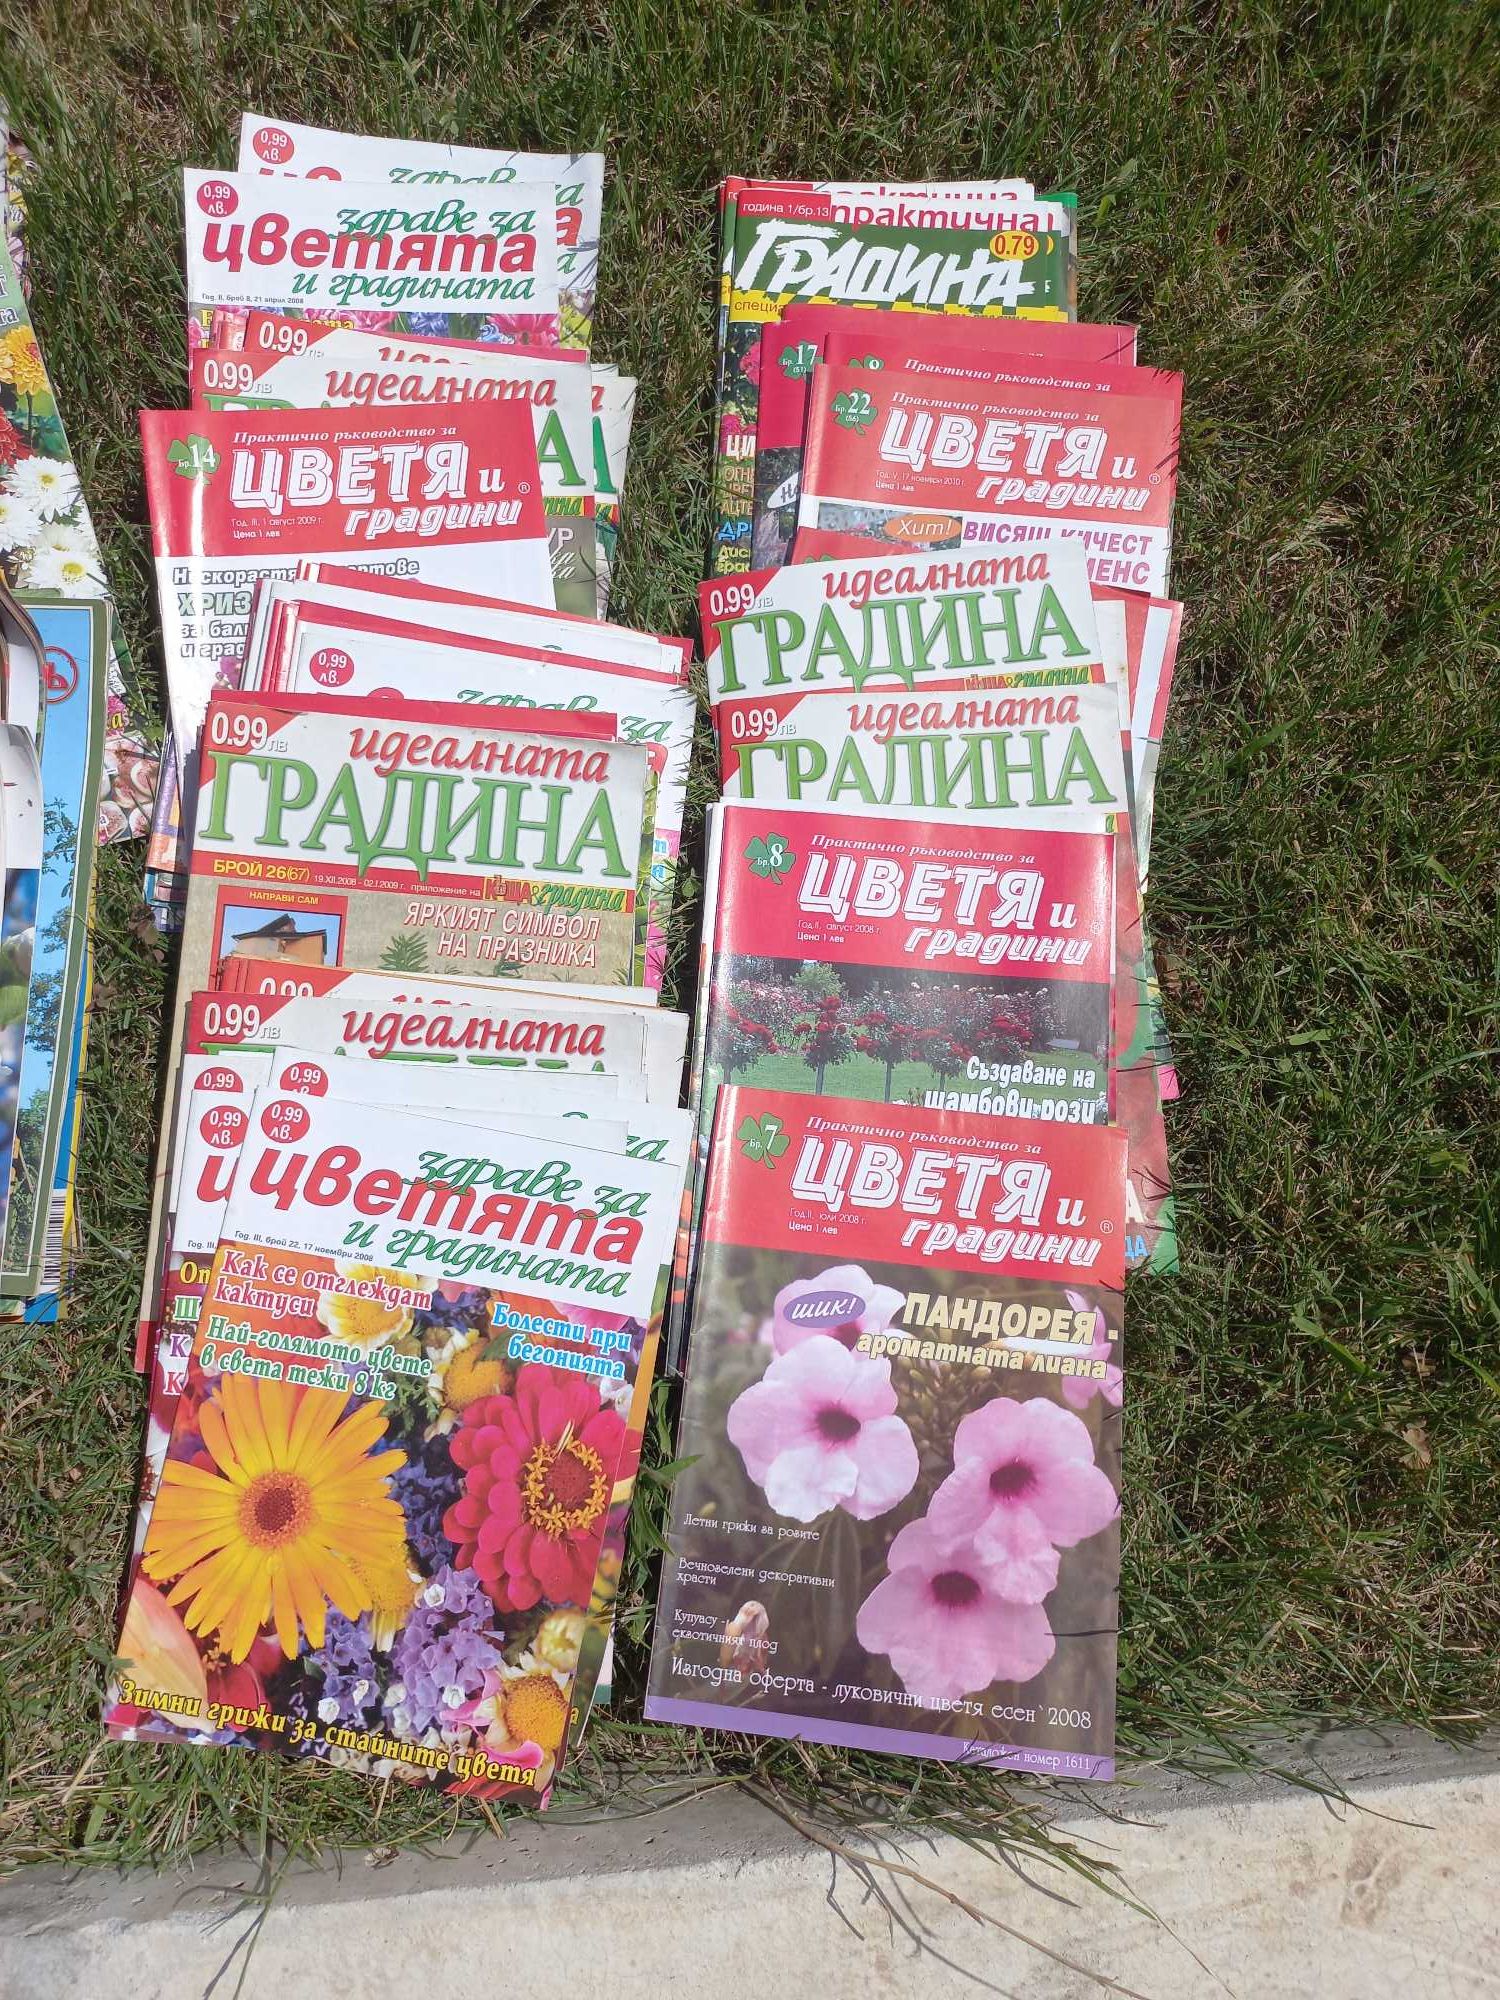 Списания за градината - Къща и градина, Идеална градина и други